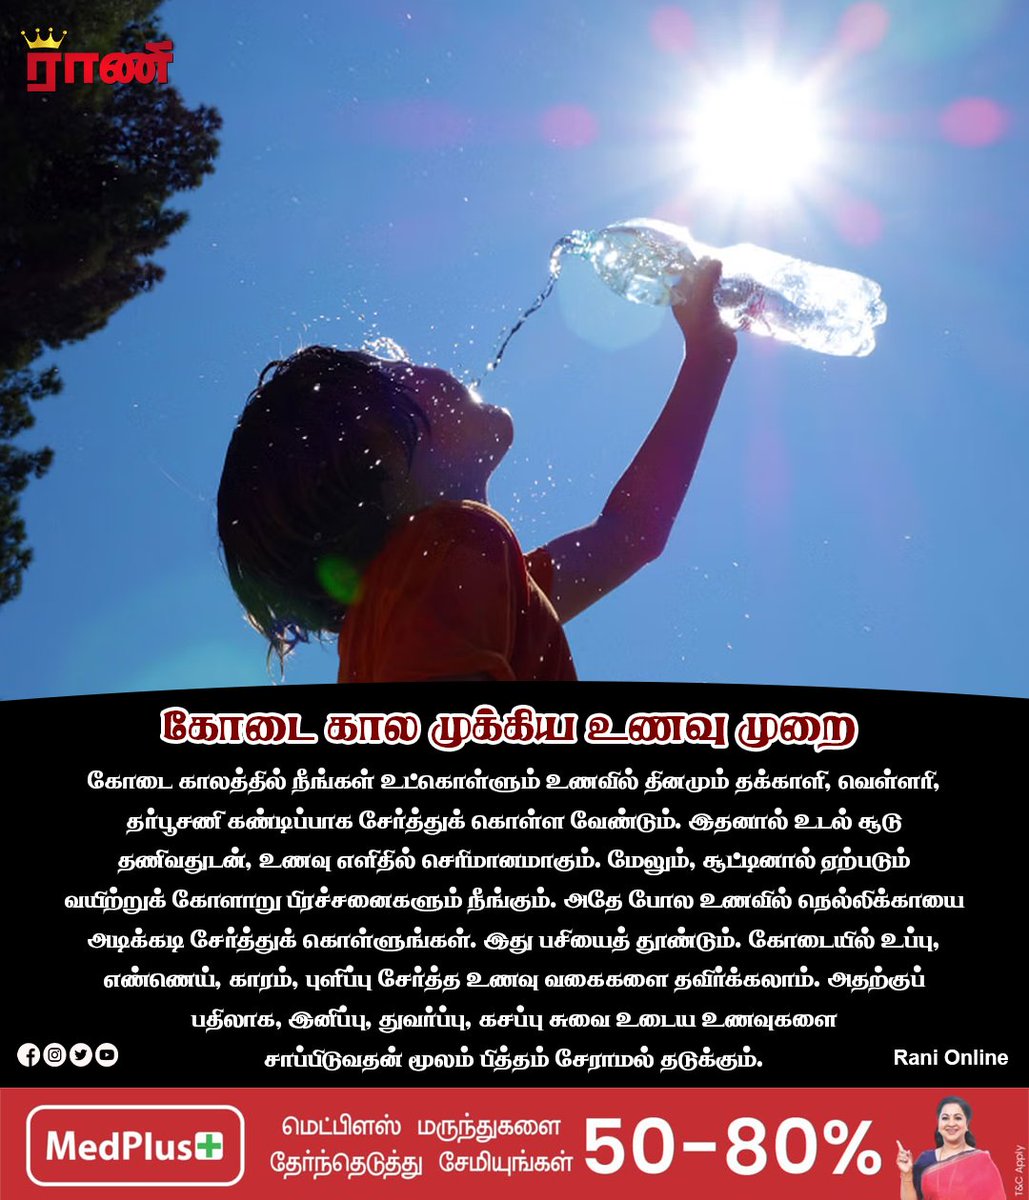 கோடை கால முக்கிய உணவு முறை

#water #health #healthyfood #generalknowledge #tamilgk #gkintamil #information #tamilfacts #knowledgesociety #sharingknowledge #knowthyself #tamilknowledgesharing #gkindia #ranionline